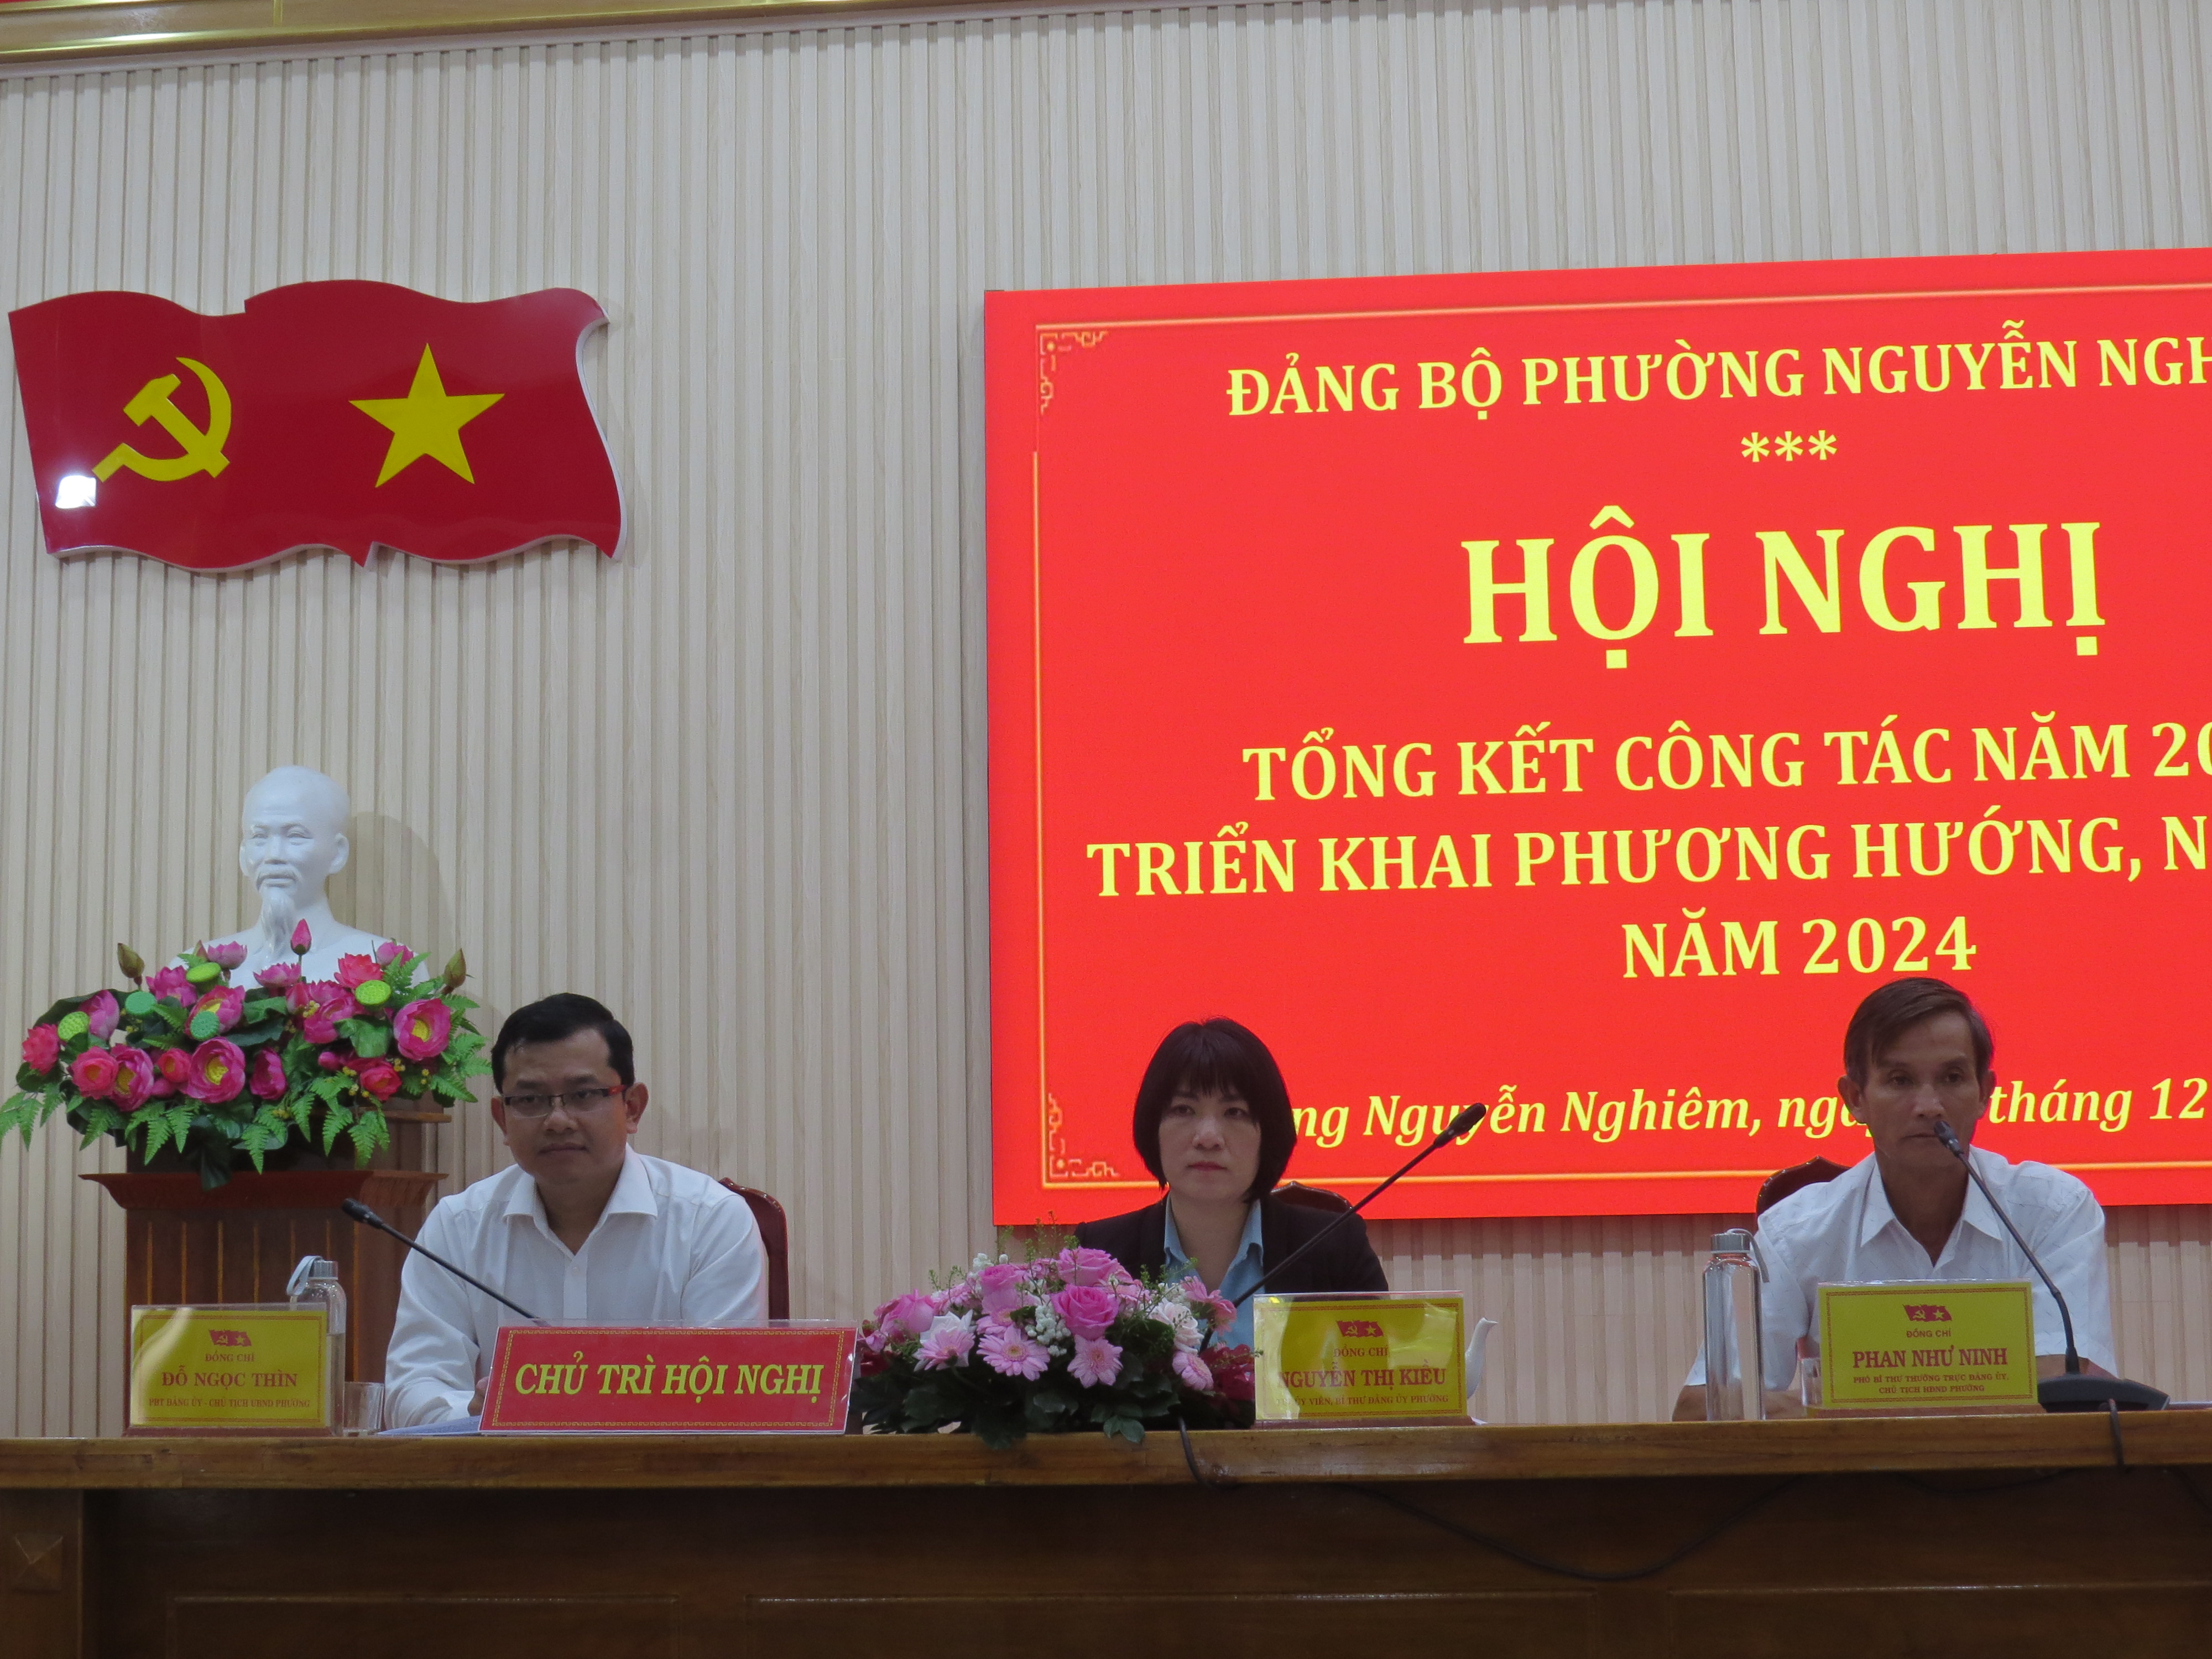 Đảng bộ Phường Nguyễn Nghiêm tổng kết công tác năm 2023